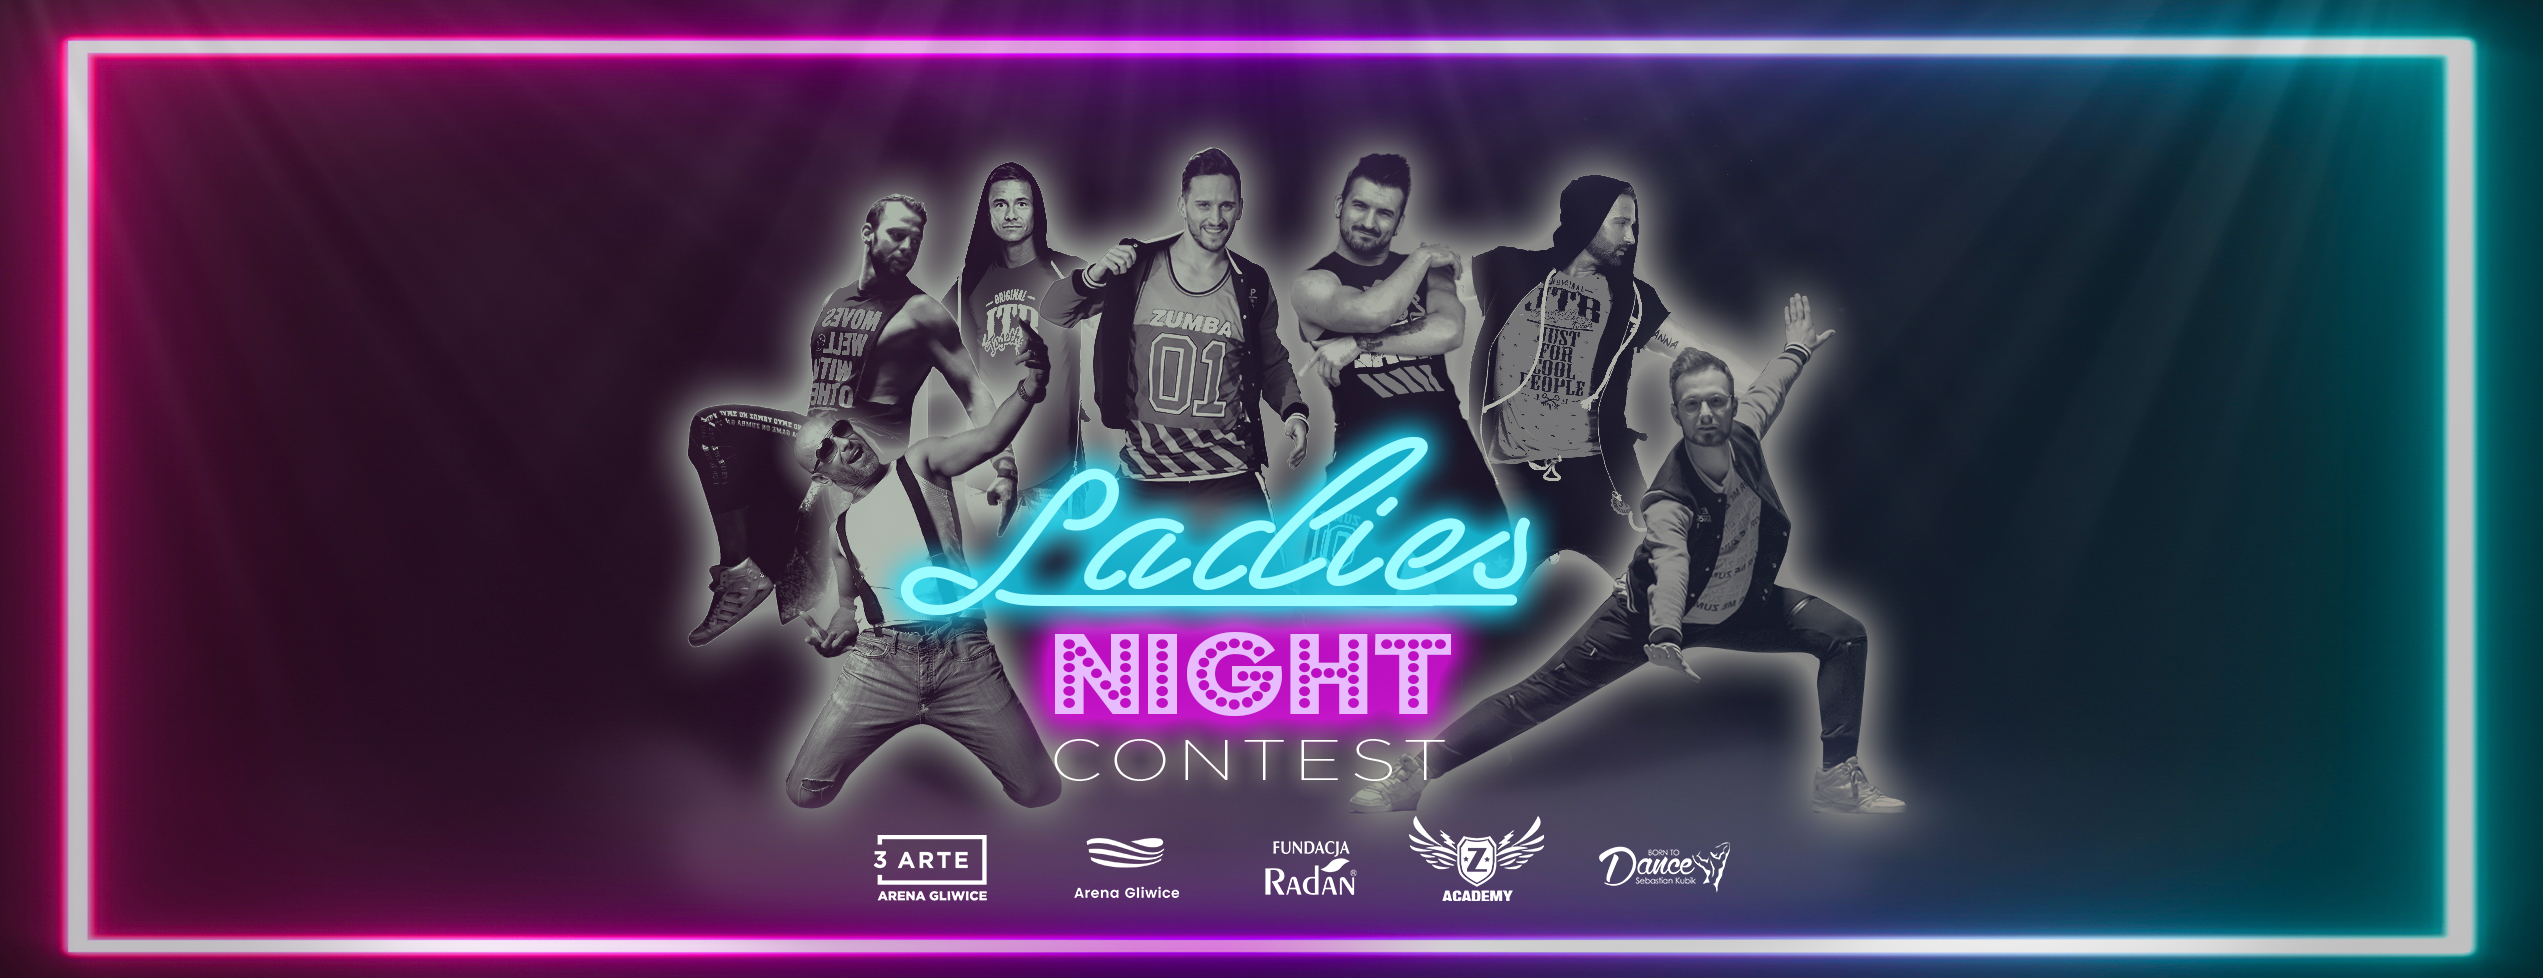 Ladies’ Night Contest